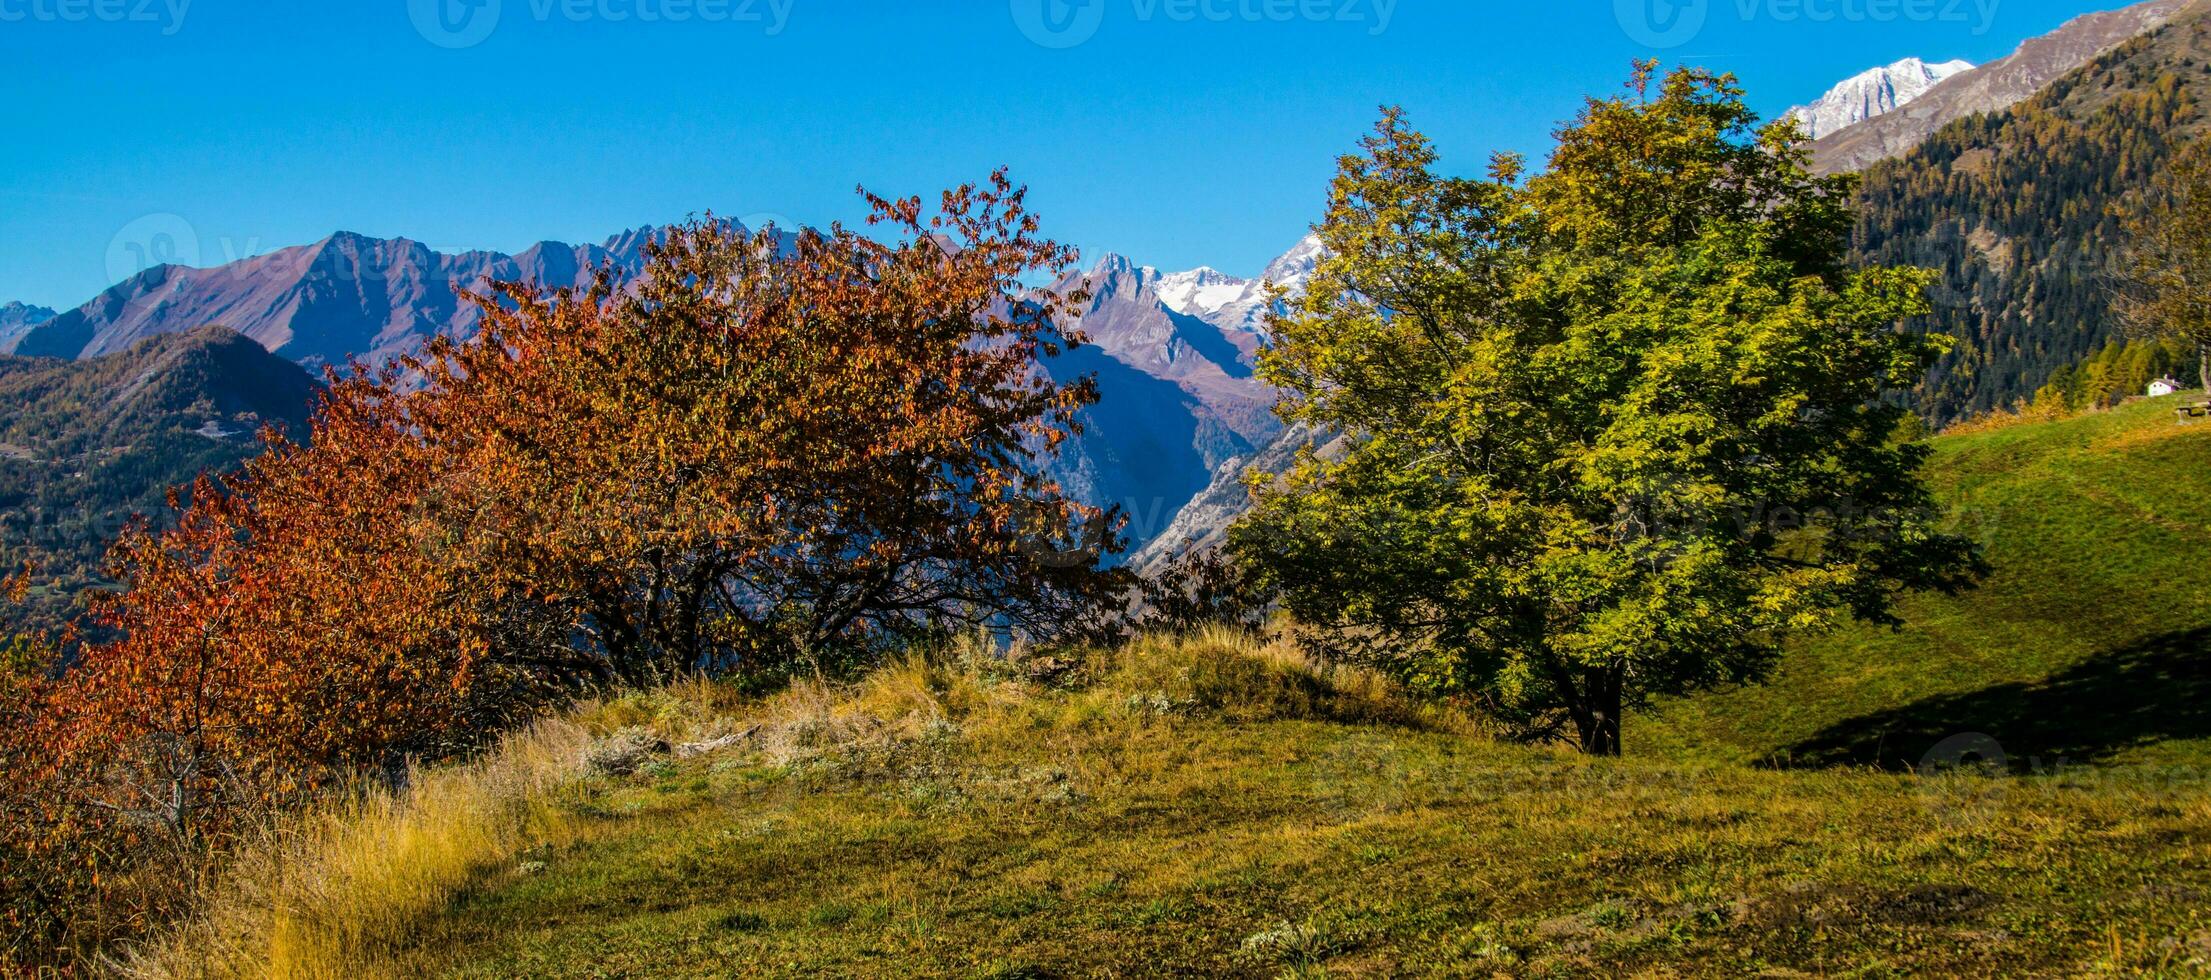 autunno nel il Alpi, Italia foto